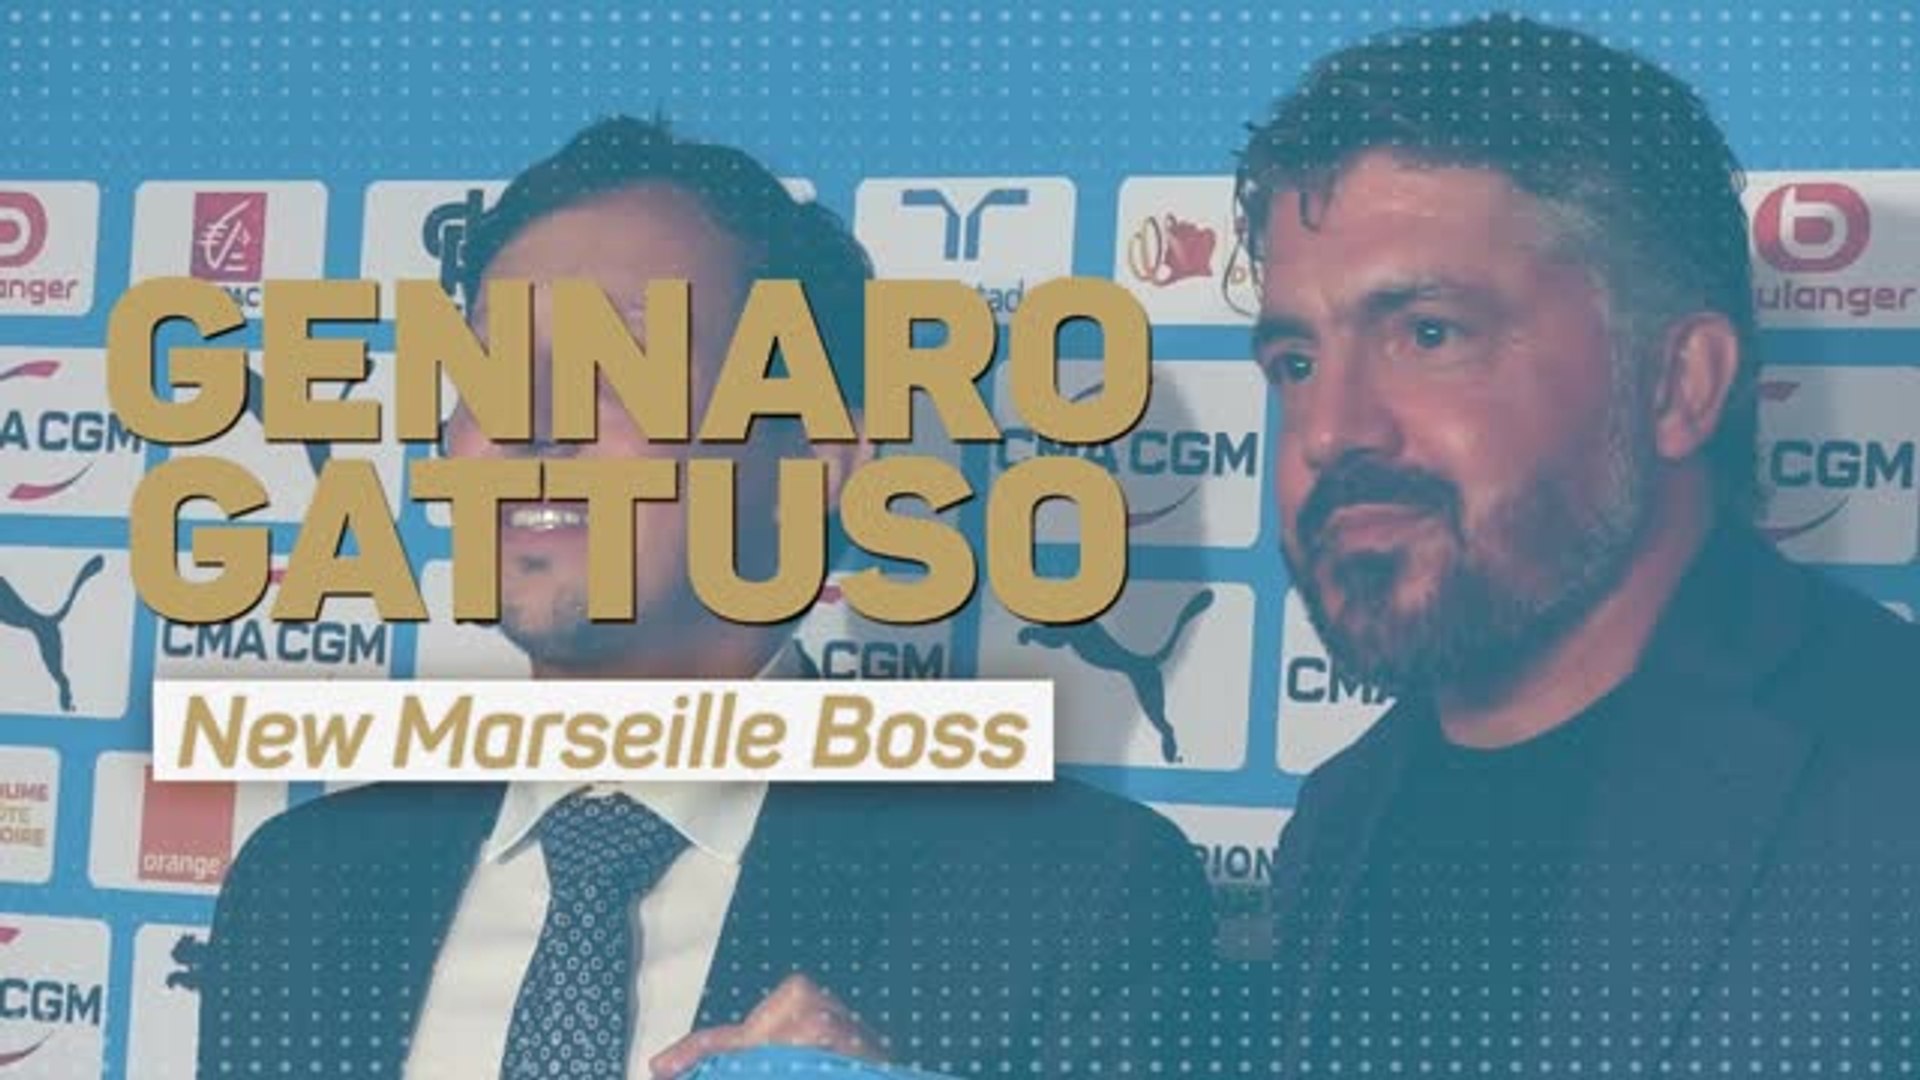 Gattuso é o novo treinador do Marseille 